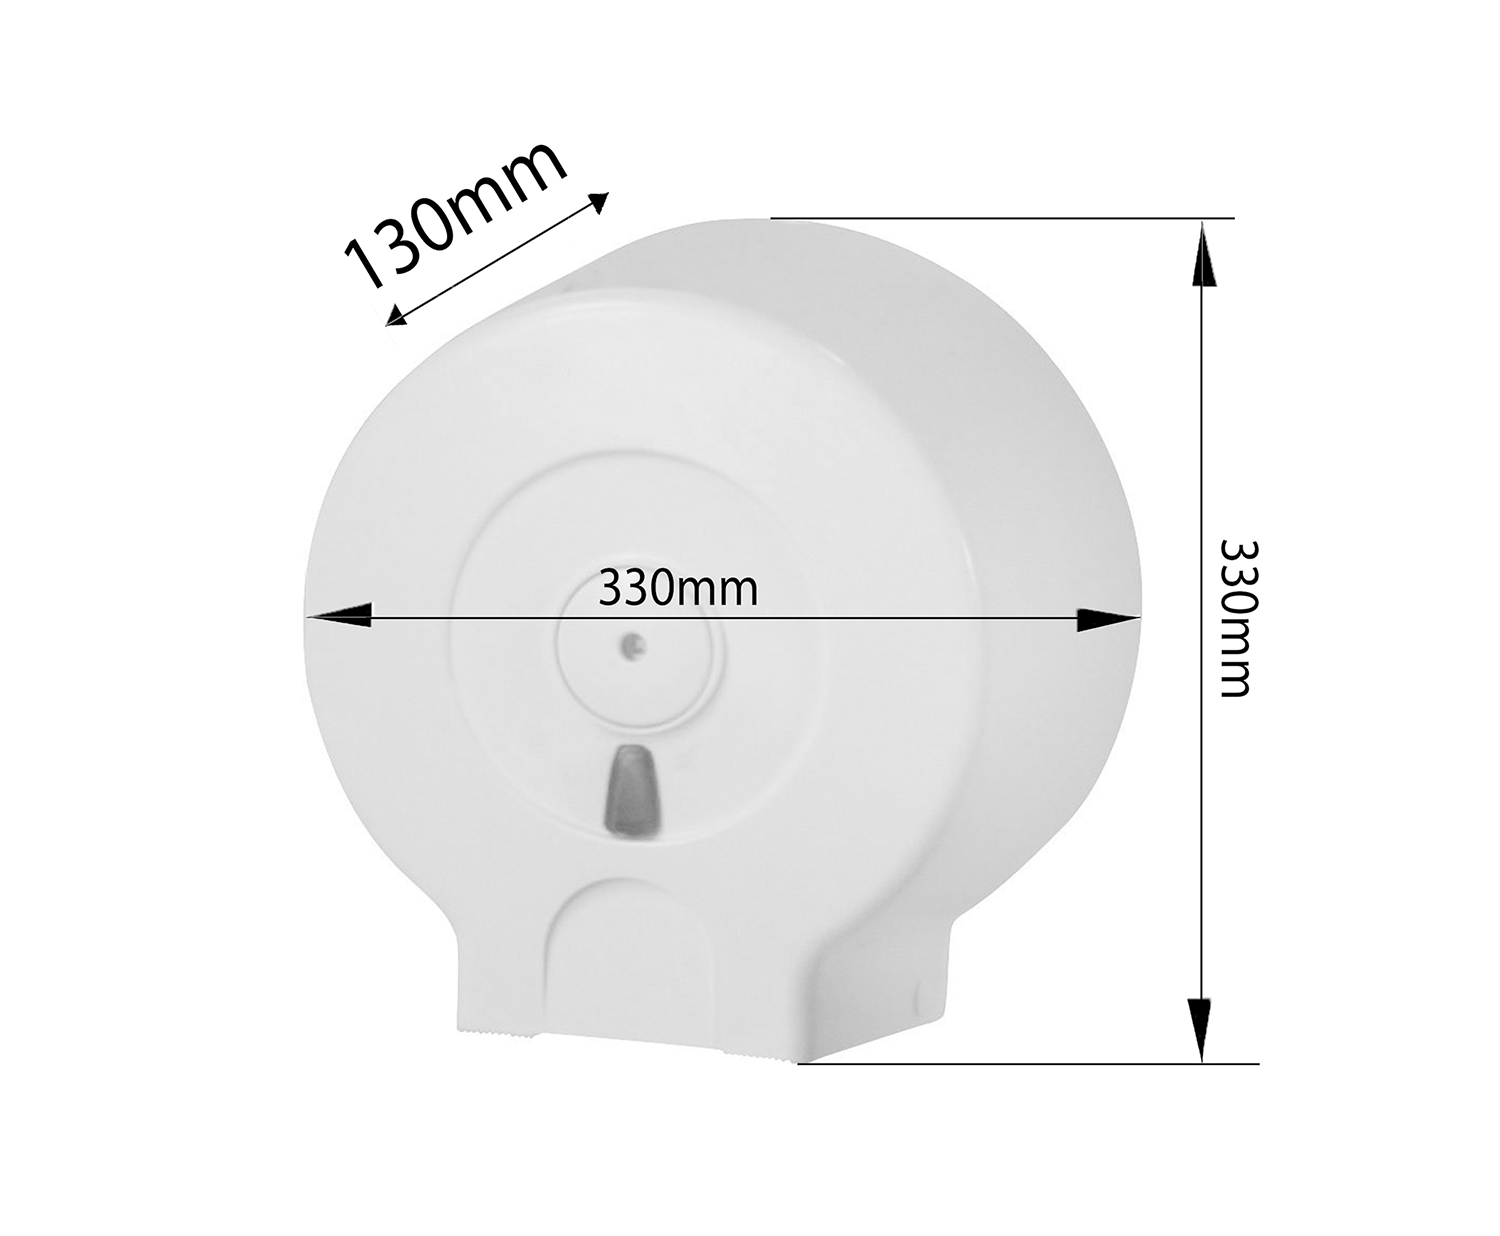 Toilettenpapierspender bis 29 cm Durchmesser, ABS, weiß